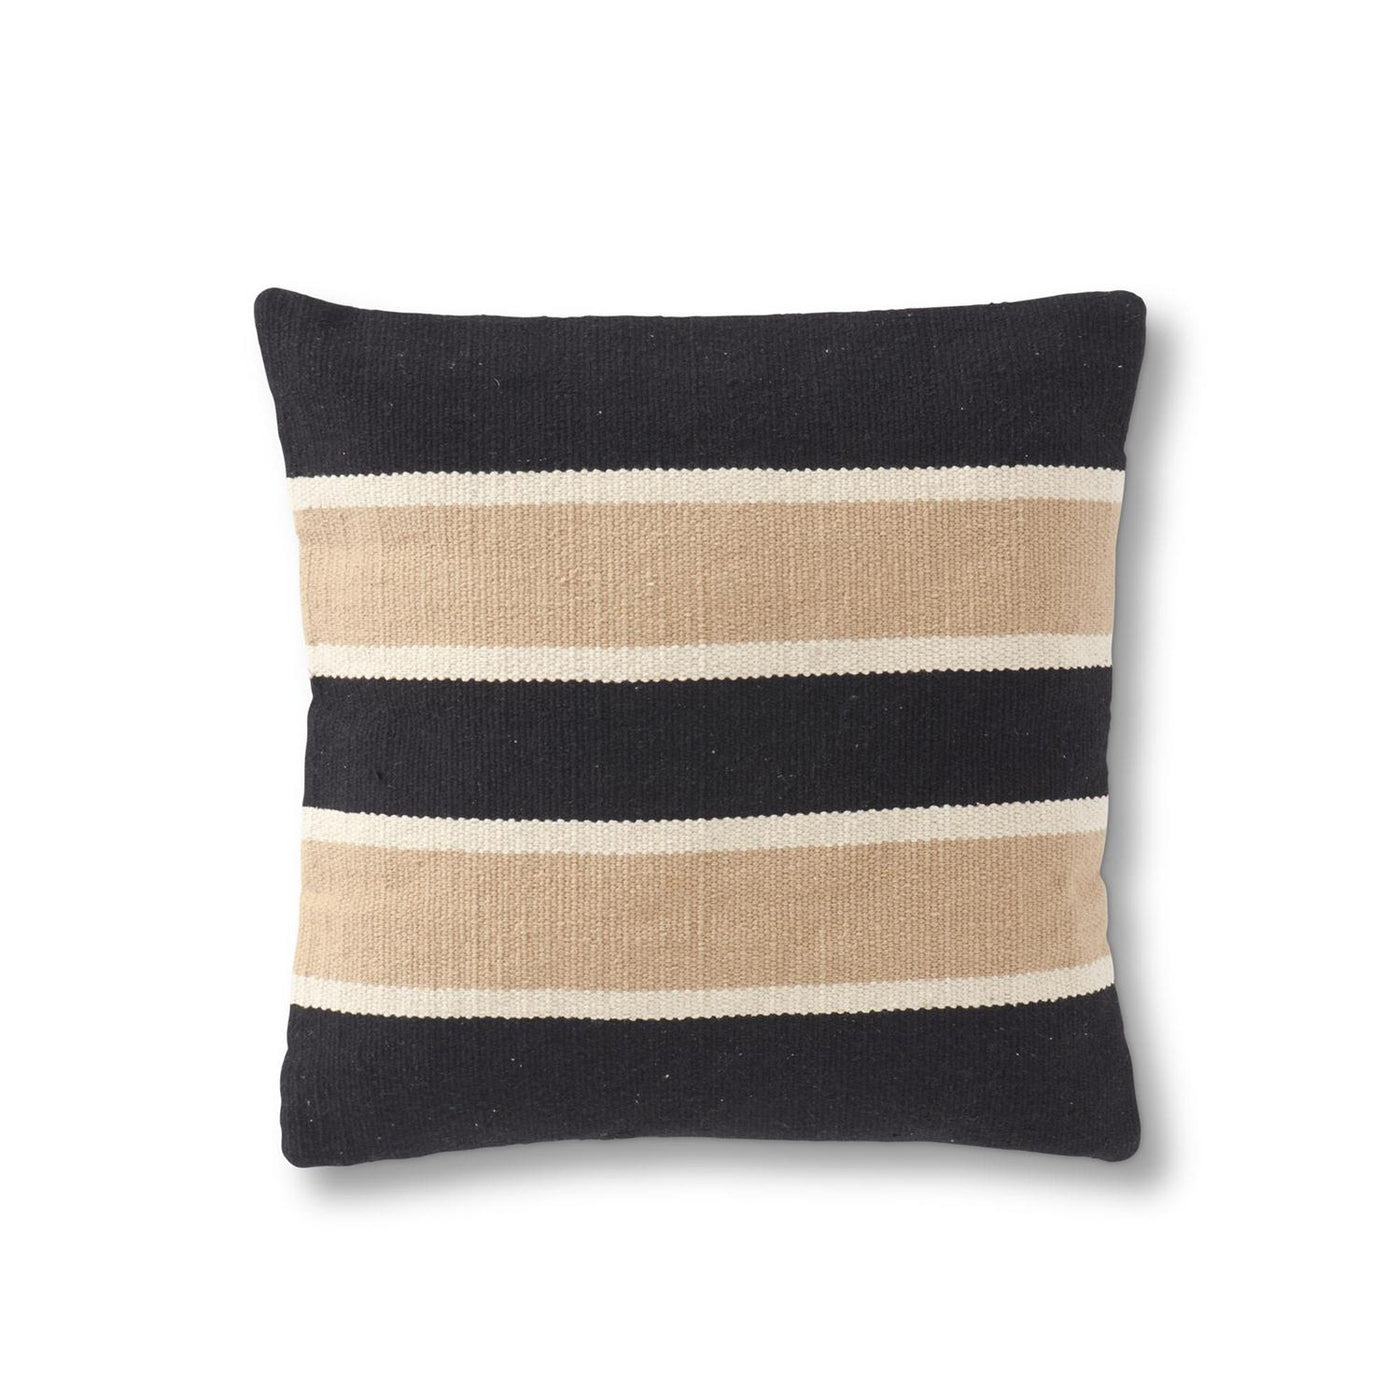 Black & Tan Striped Throw Pillow